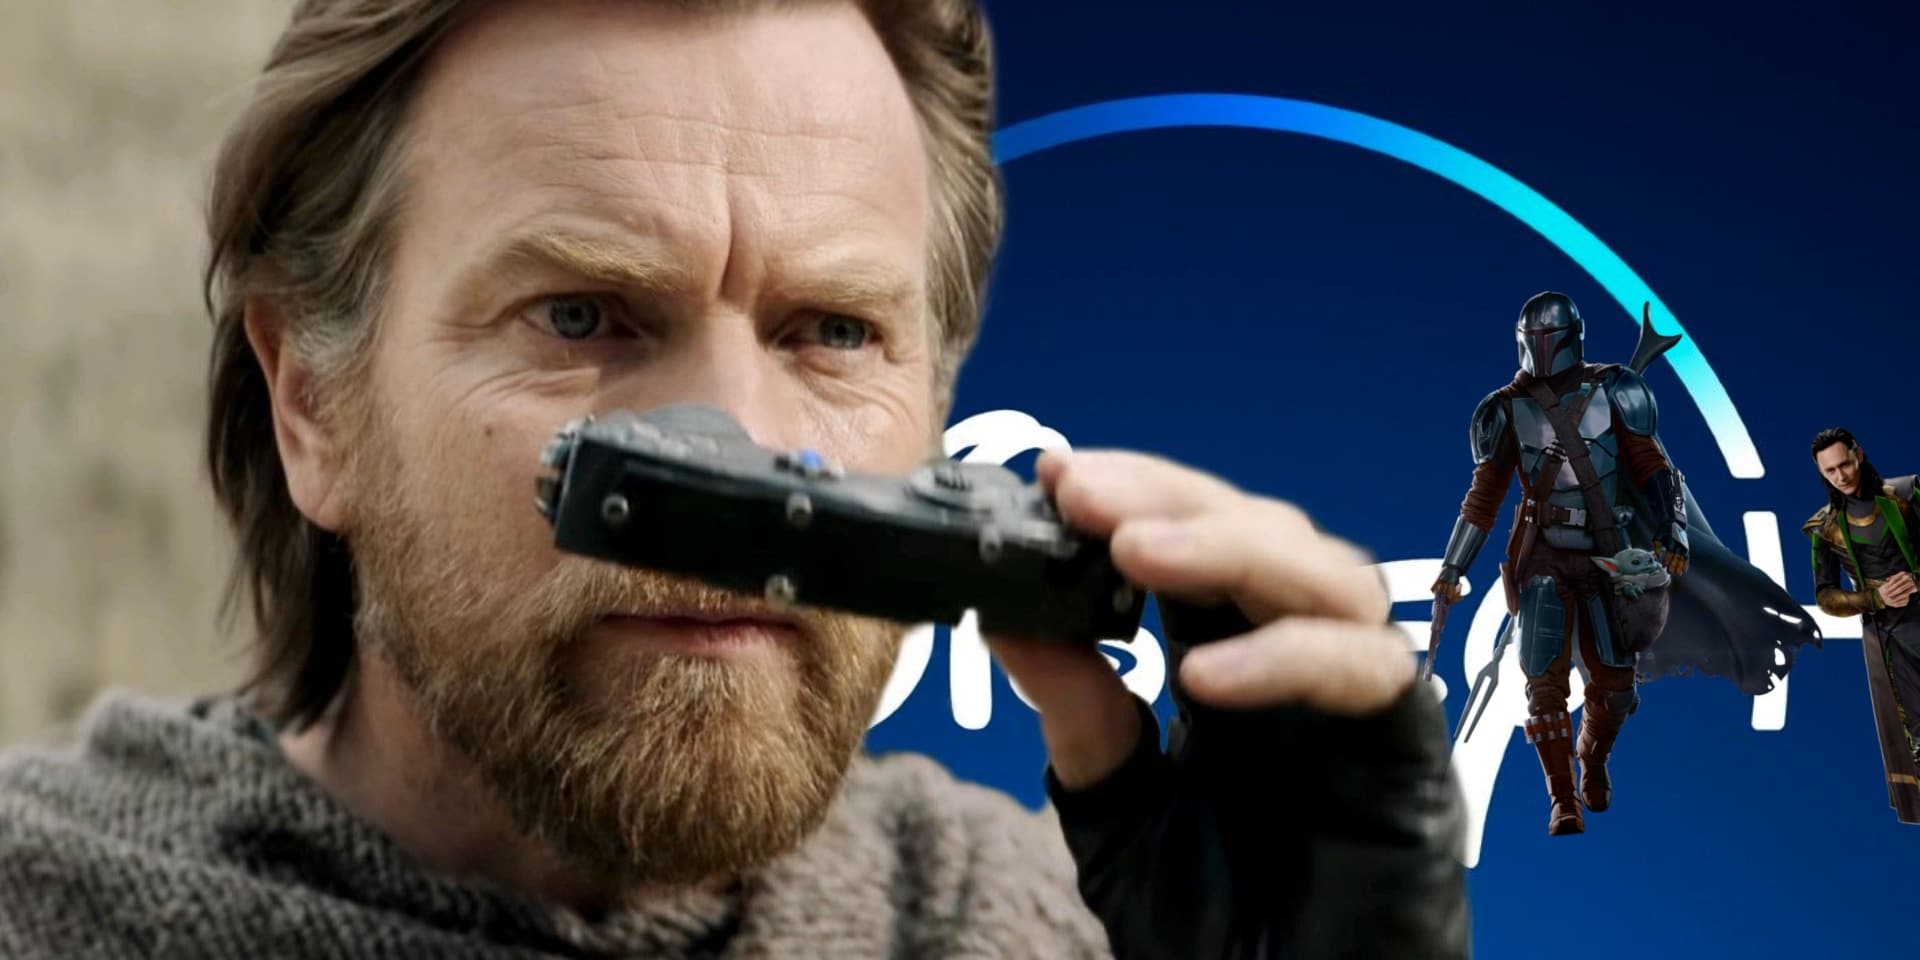 Ewan-McGregor-as-Obi-Wan-Kenobi-and-Disney-Plus-GamersRD (1)